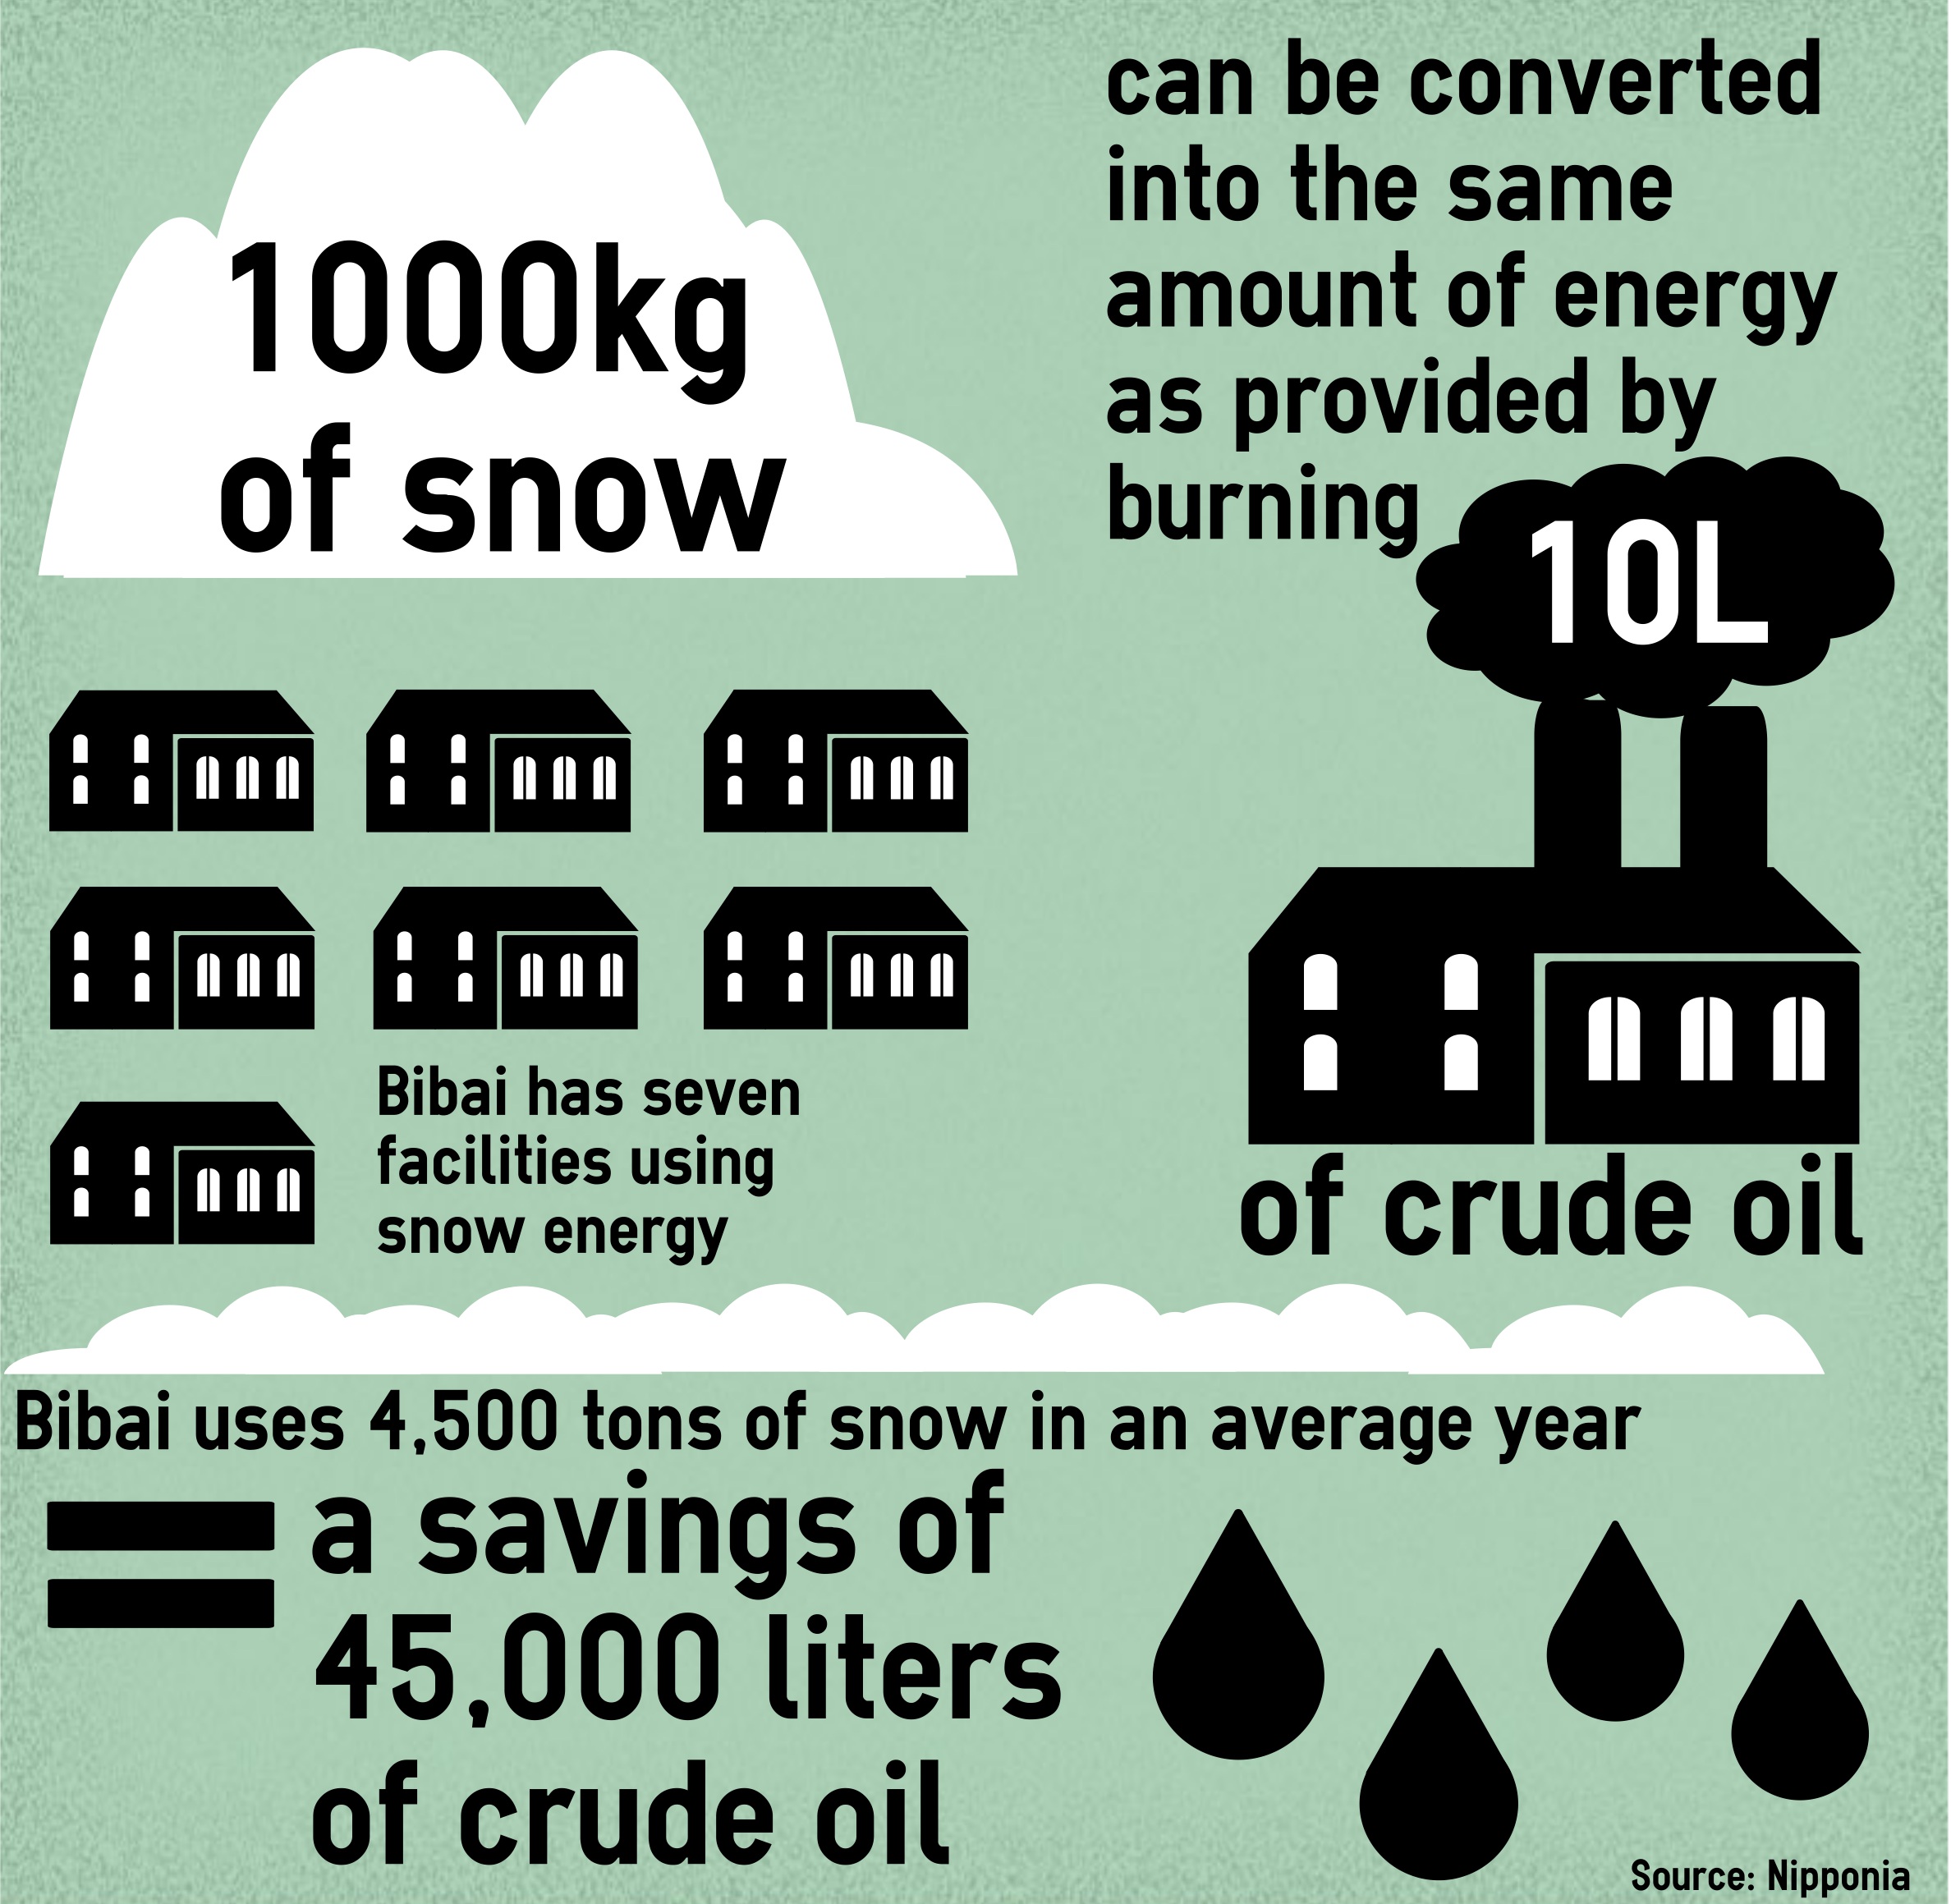 Bibai's snow-to-energy benefits